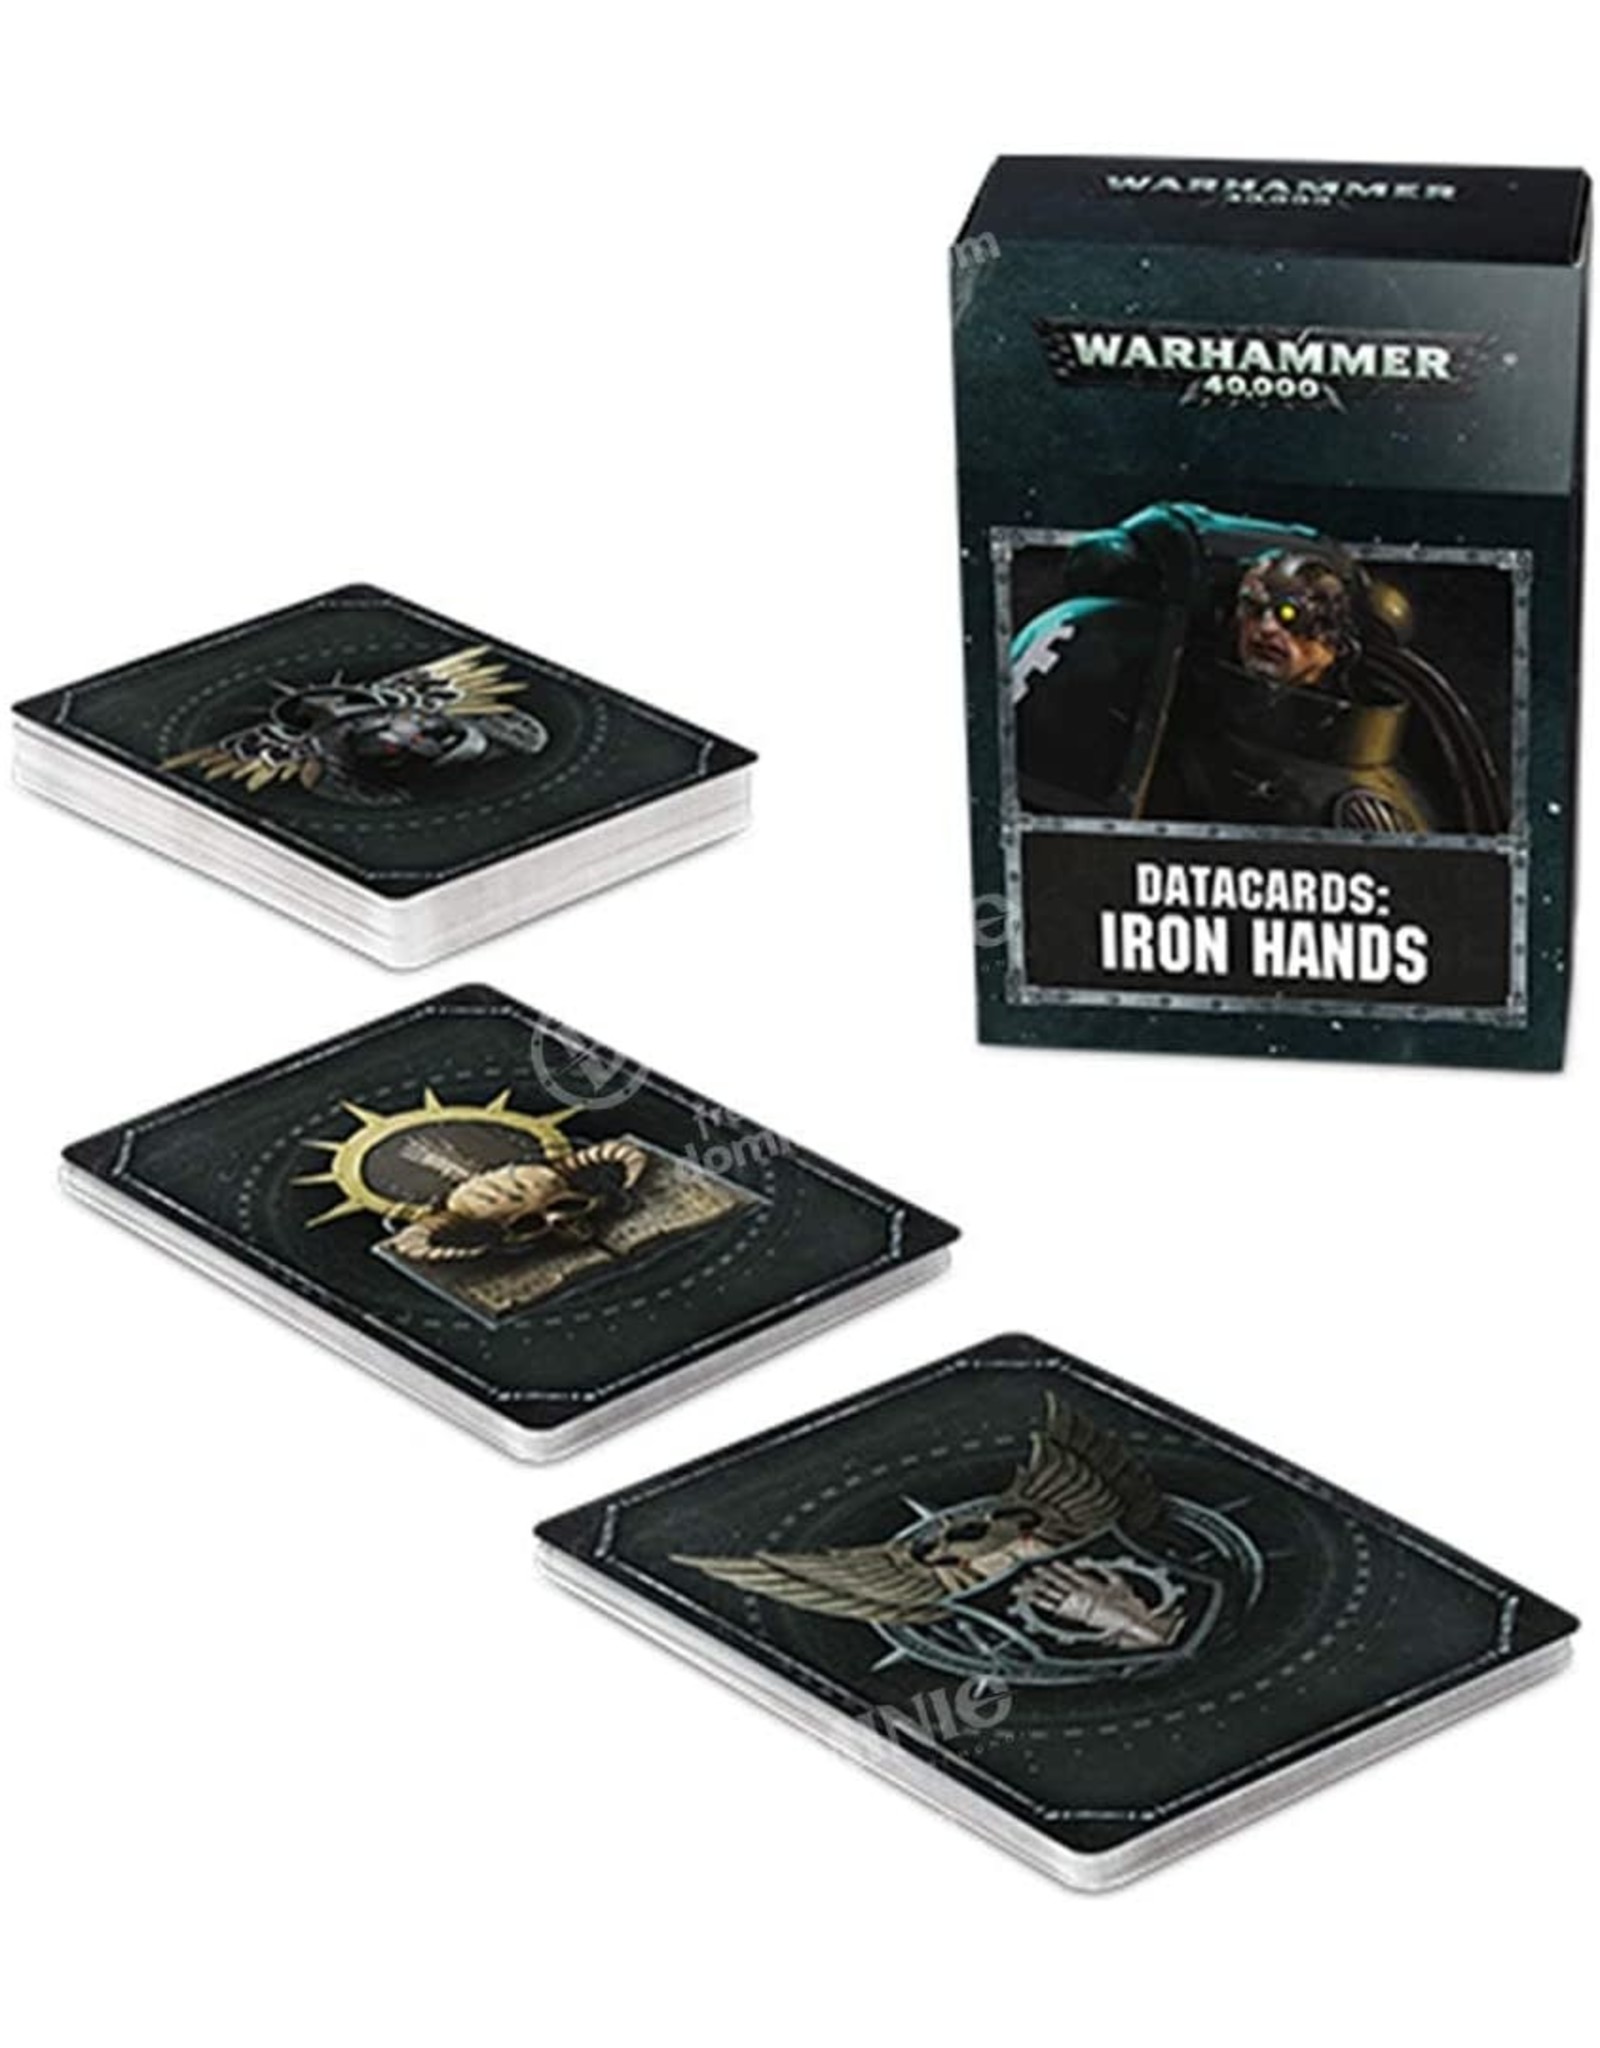 Warhammer 40k Iron Hands Datacards